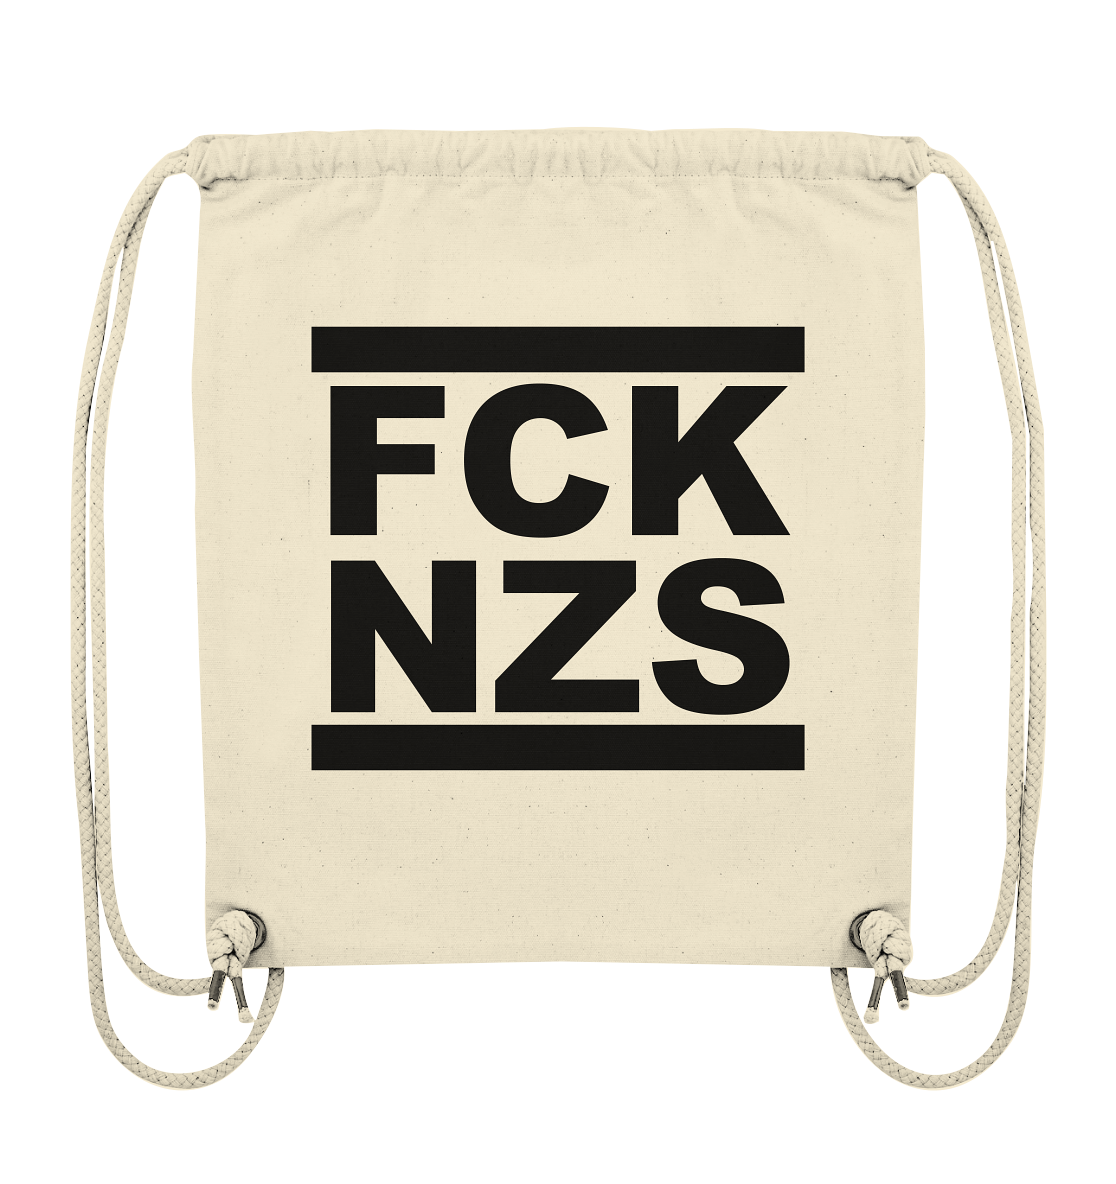 N.O.S.W. BLOCK Gegen Rechts Gym Bag "FCK NZS" beidseitig bedruckter Organic Turnbeutel natural raw